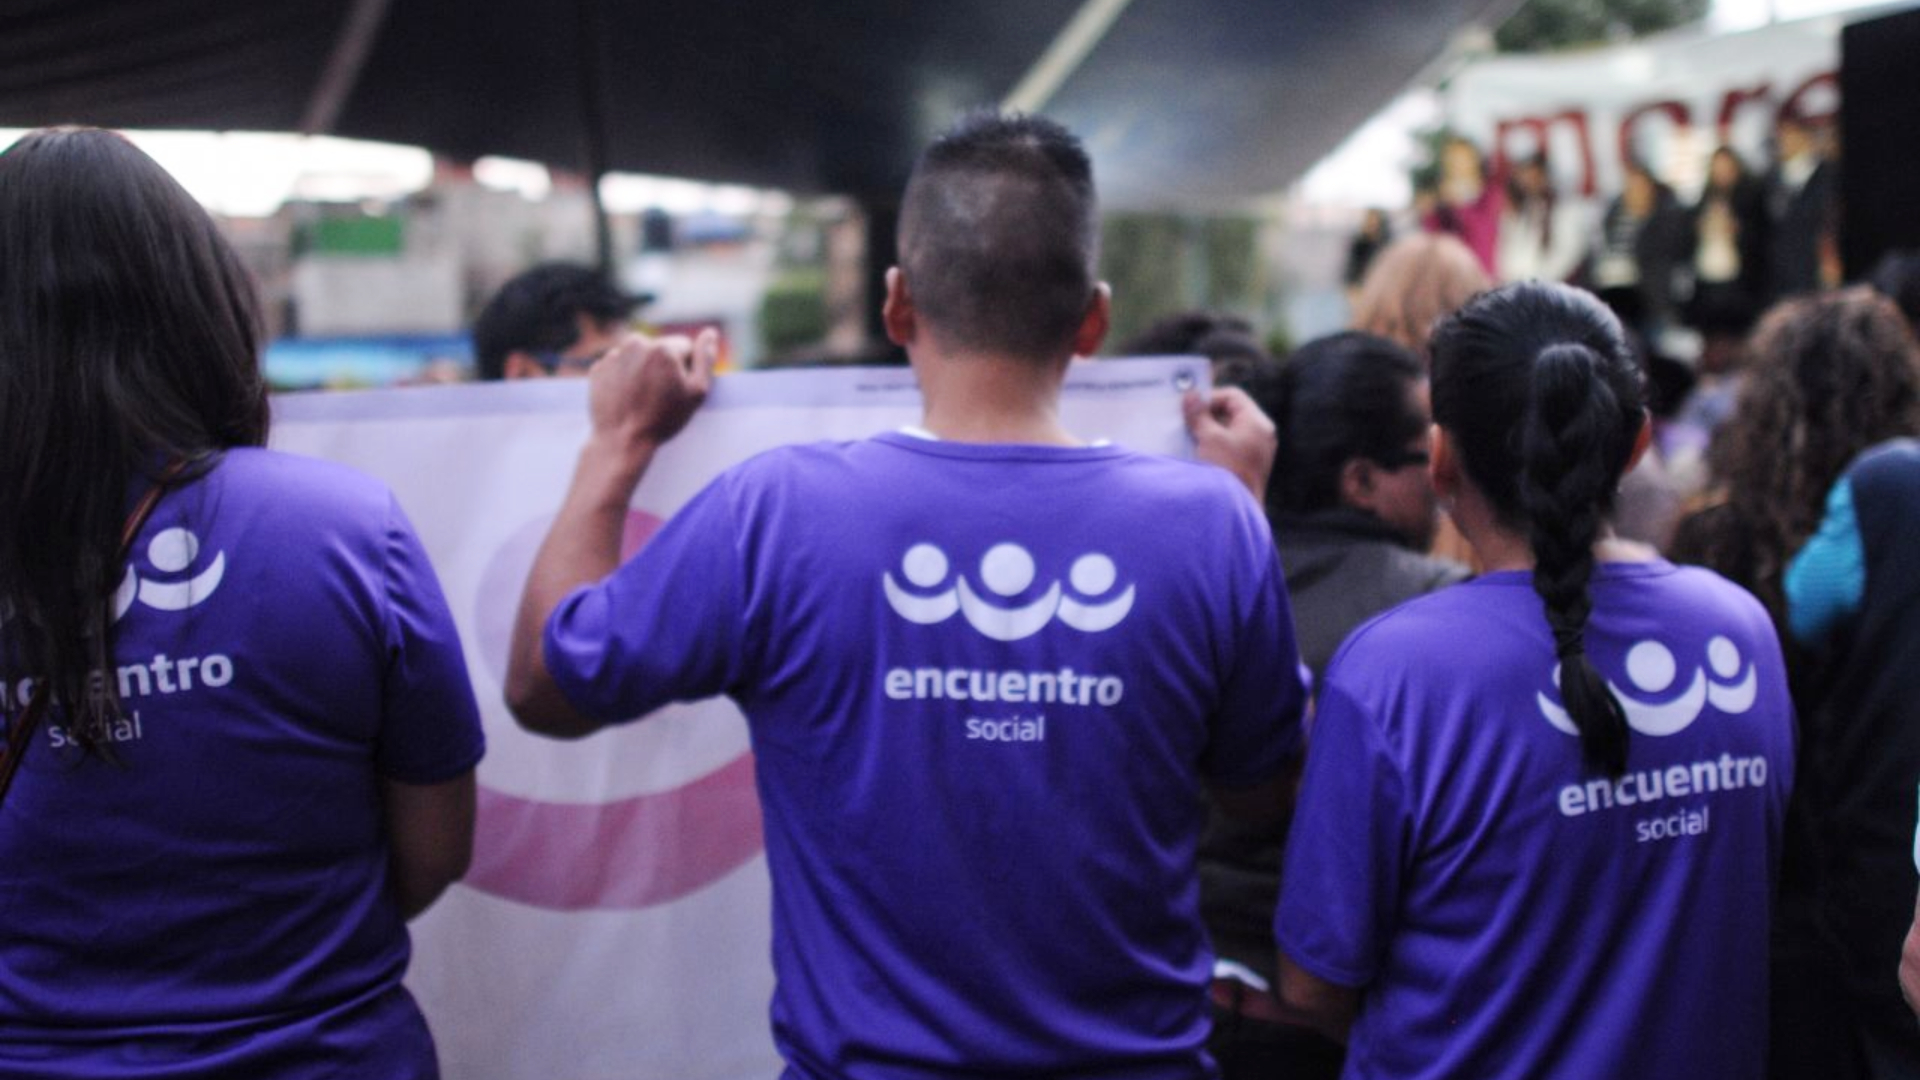 Encuentro Social pasó a conformarse en una nueva organización conocida como Encuentro Solidario tras perder el registro en 2018 (Foto: Cuartoscuro)